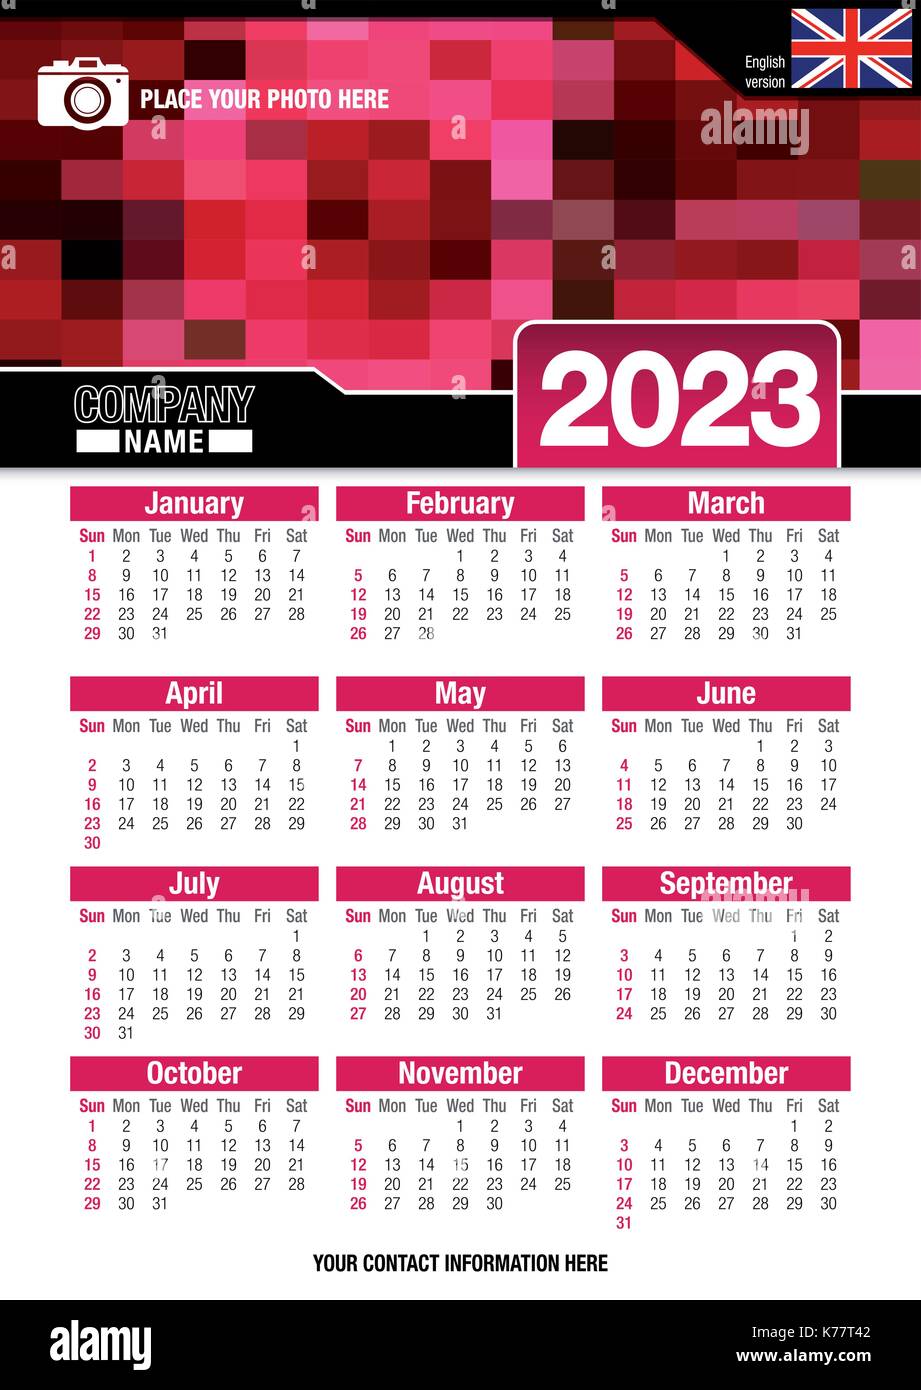 Utile calendario da parete 2023 con design di colori rosso mosaico. Formato A4 verticale. Dimensioni: 210mm x 297mm. Versione Inglese - immagine vettoriale Illustrazione Vettoriale